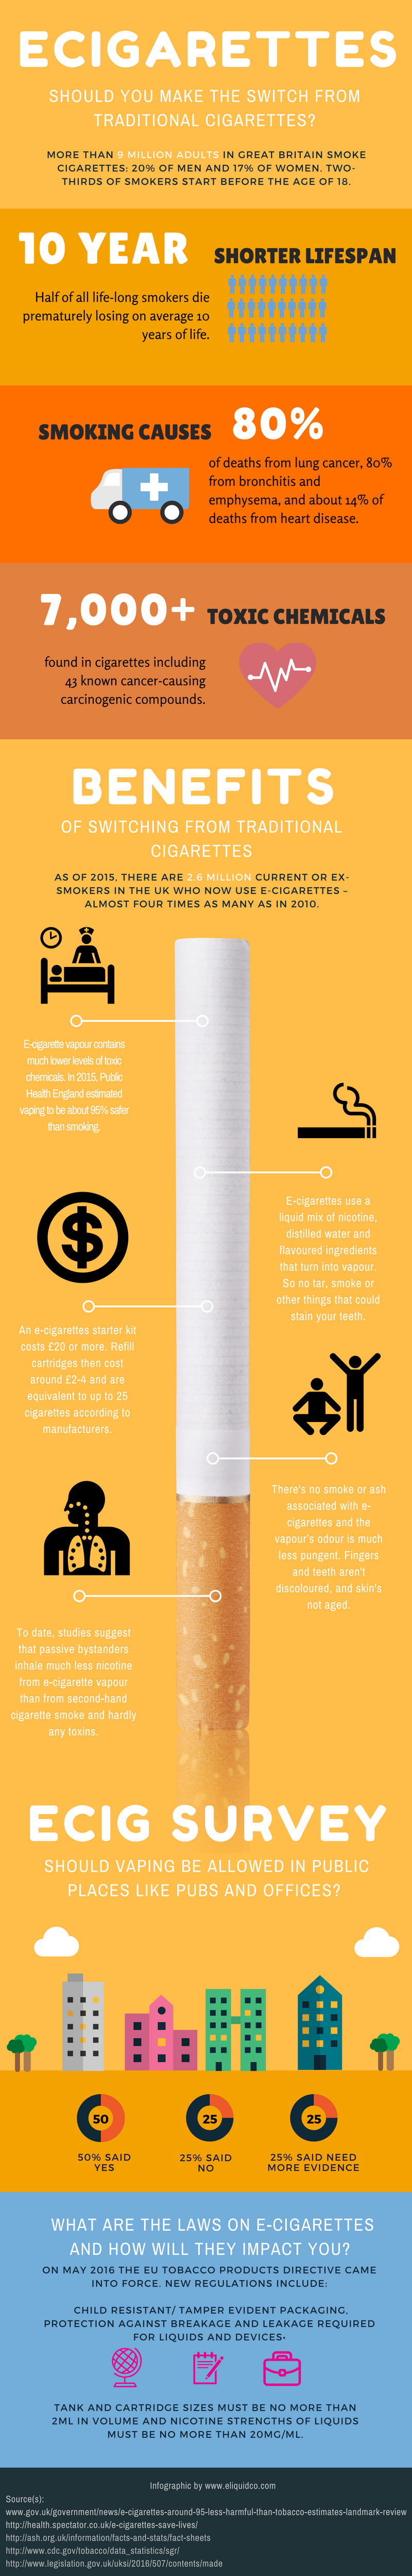 e cigarette infographic